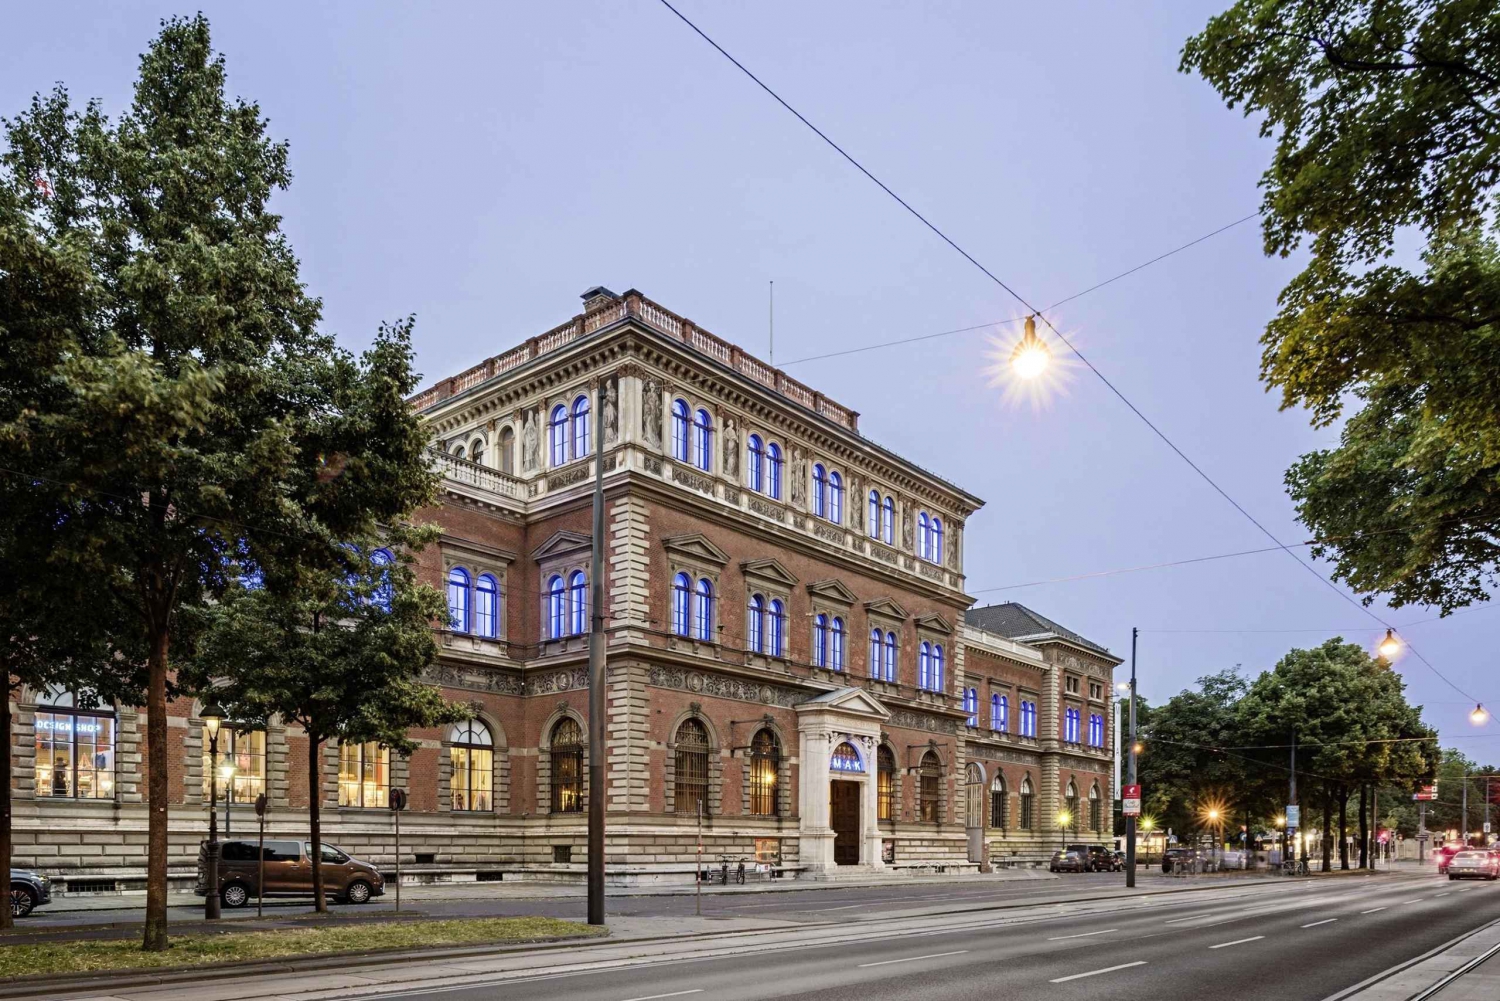 Wenen: Ticket voor het MAK - Museum voor Toegepaste Kunst